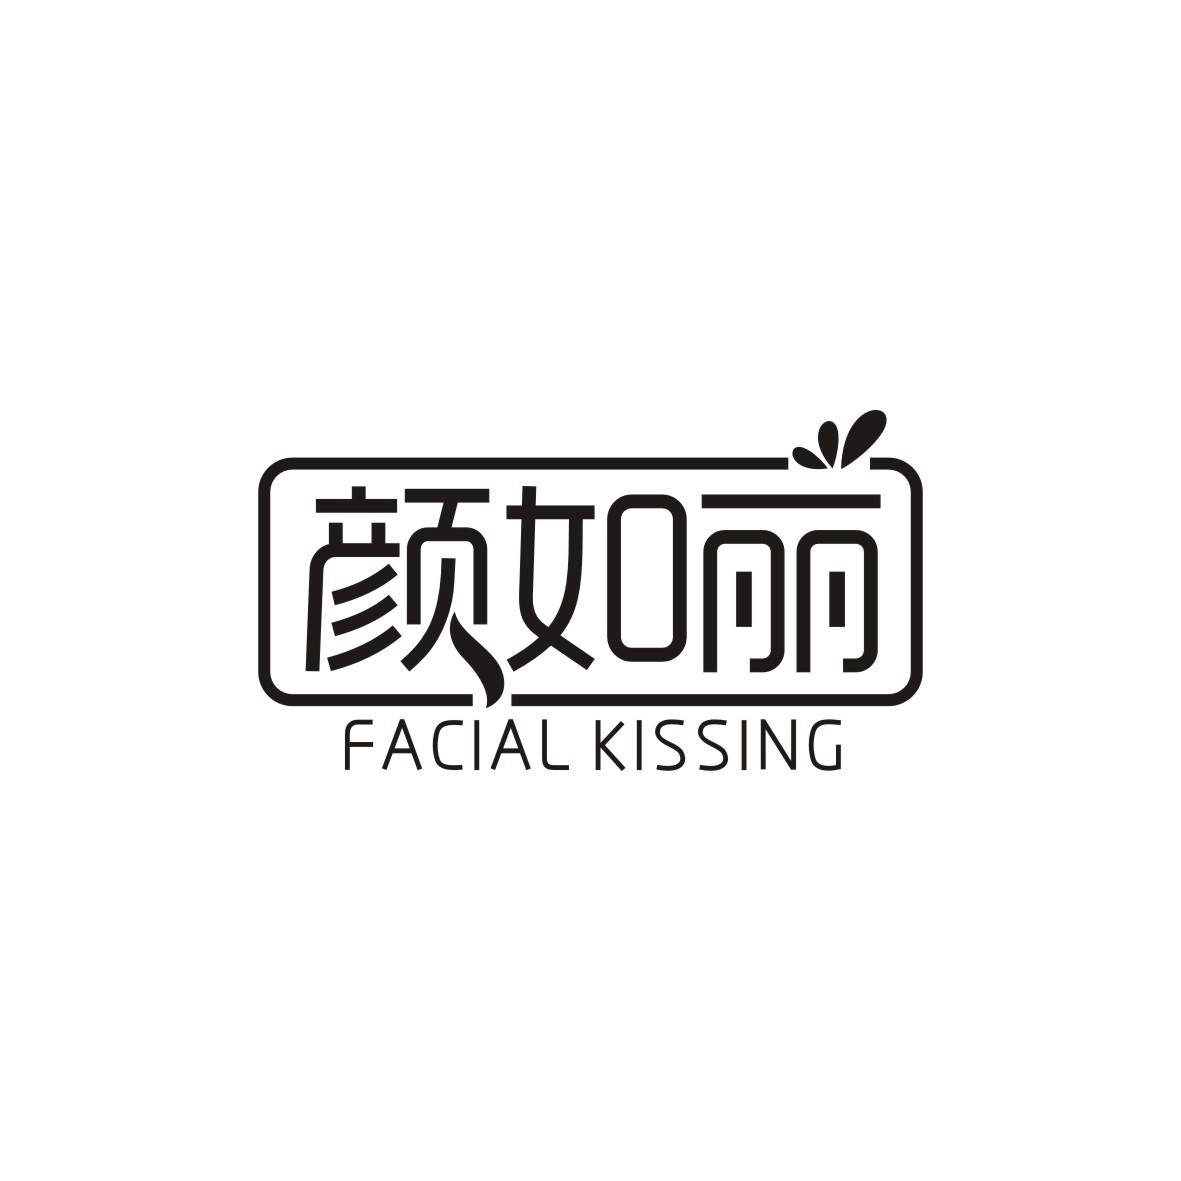  FACIAL KISSING